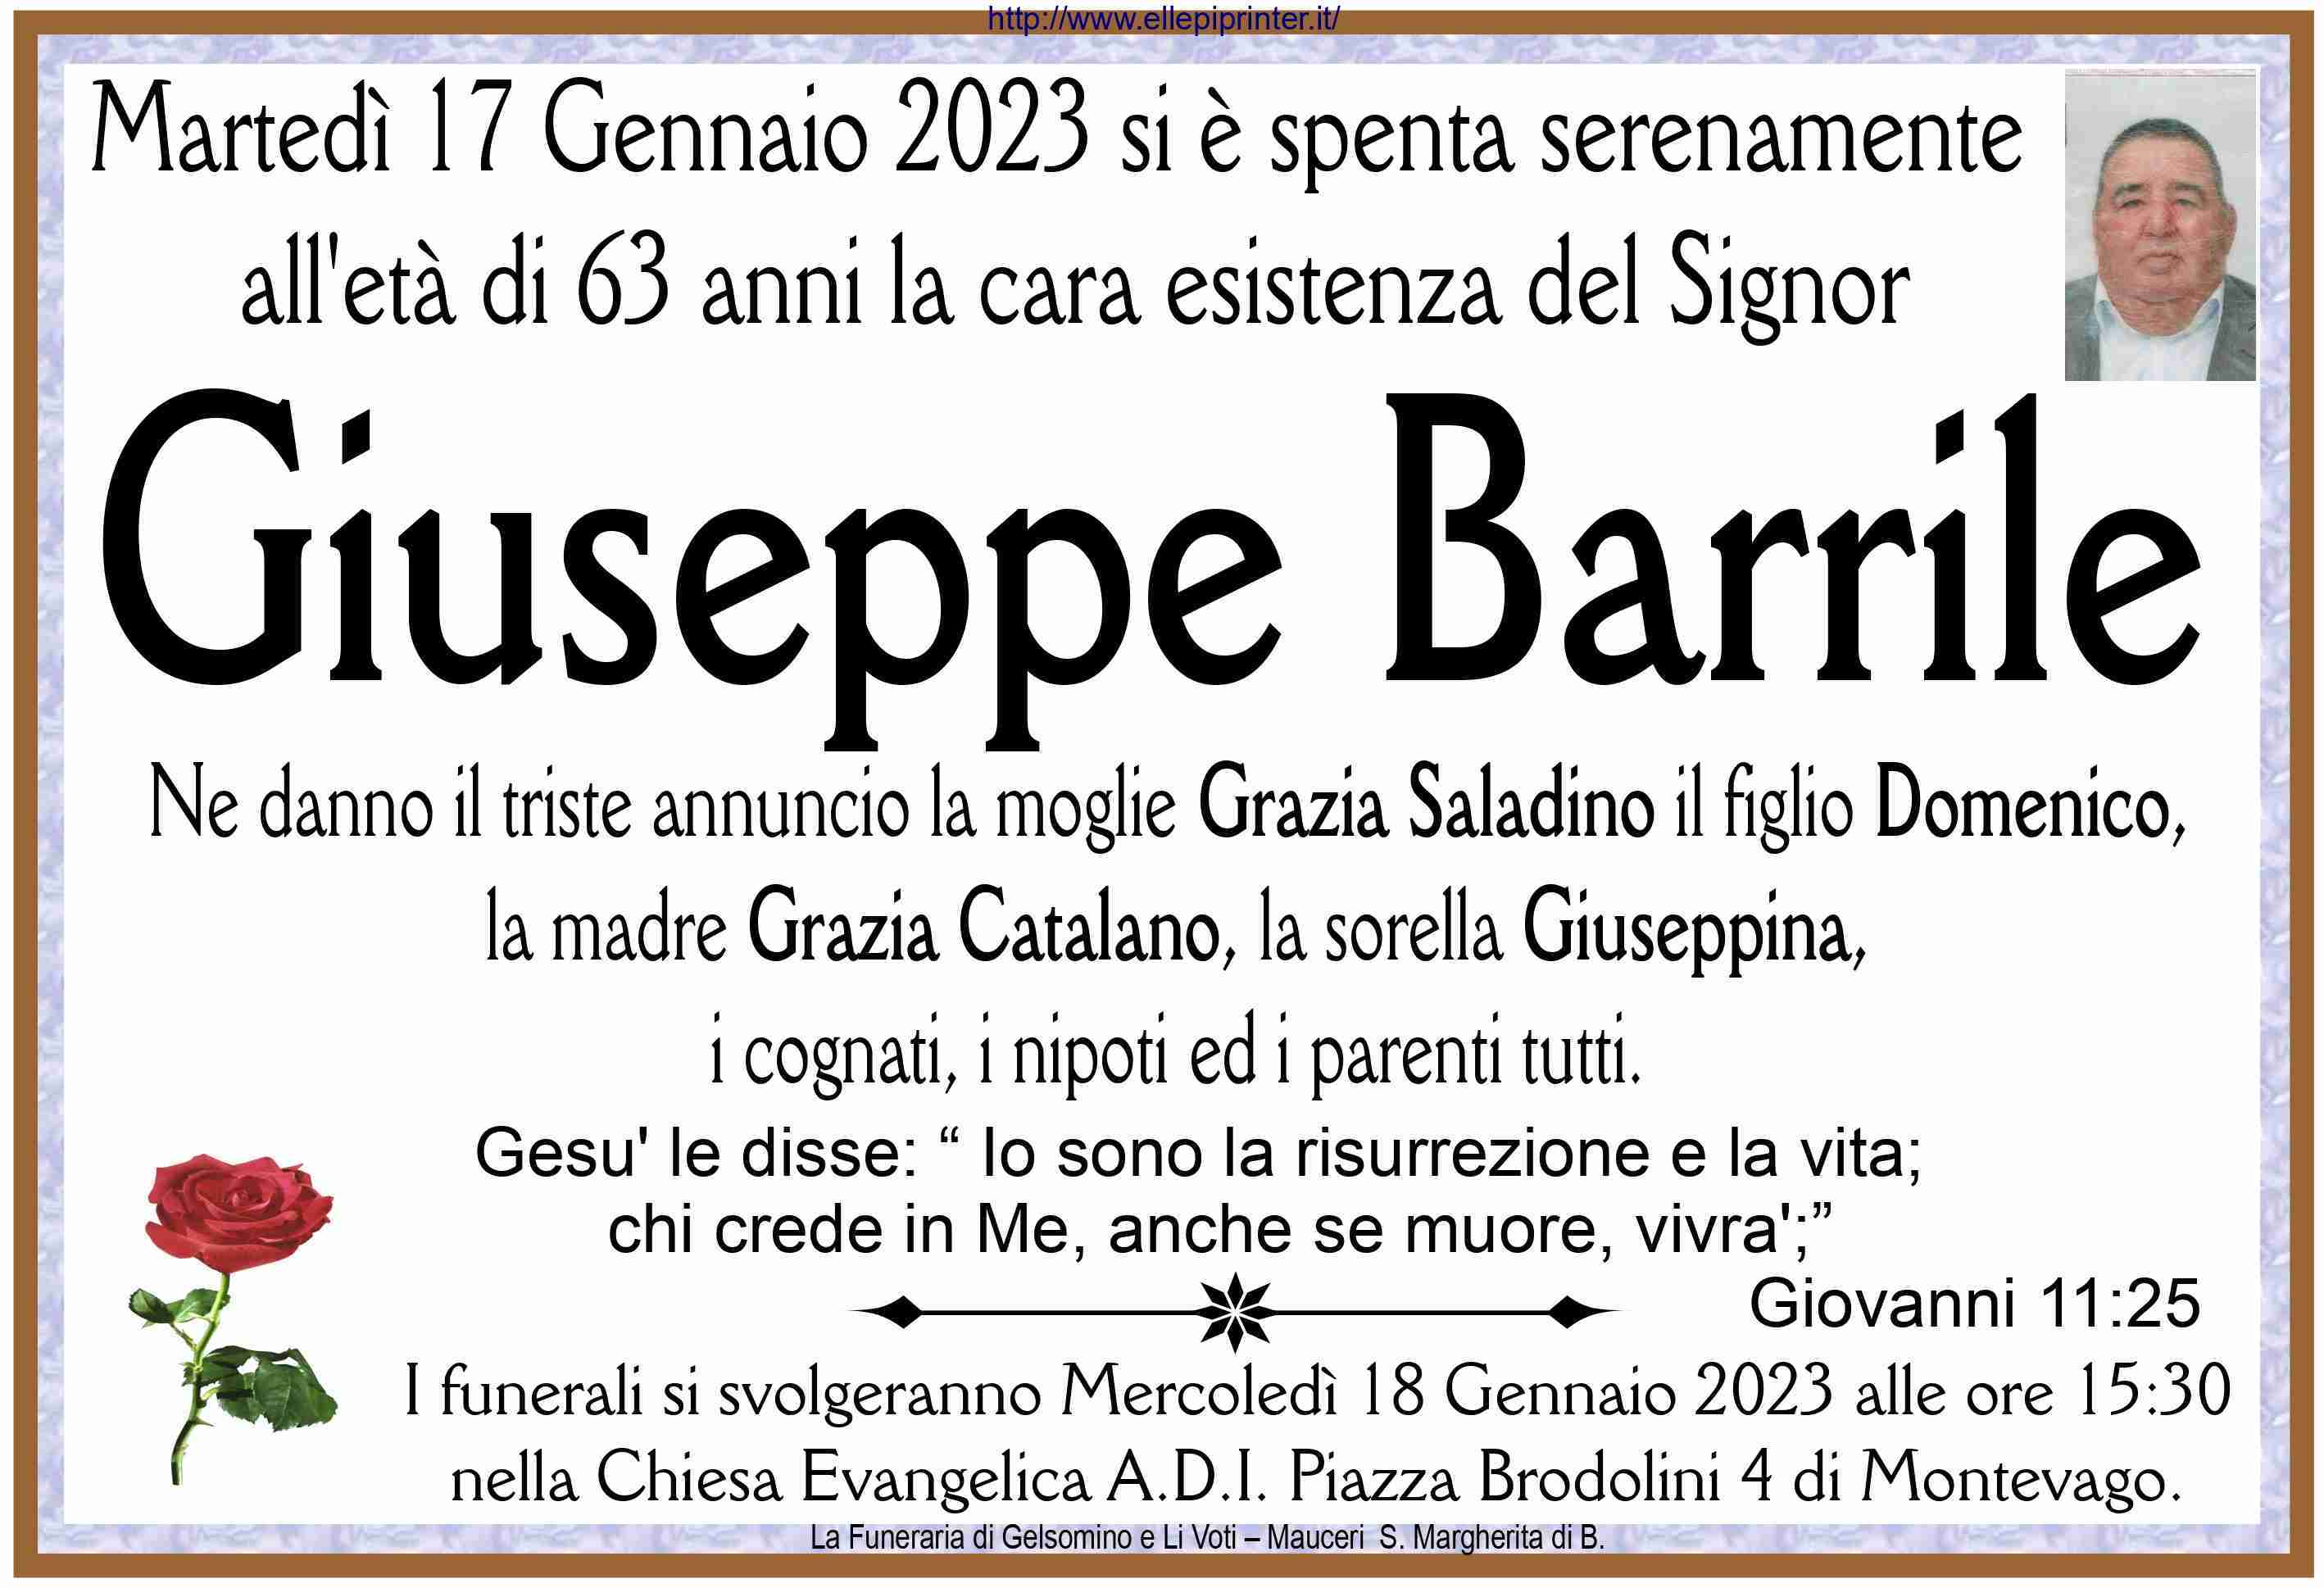 Giuseppe Barrile